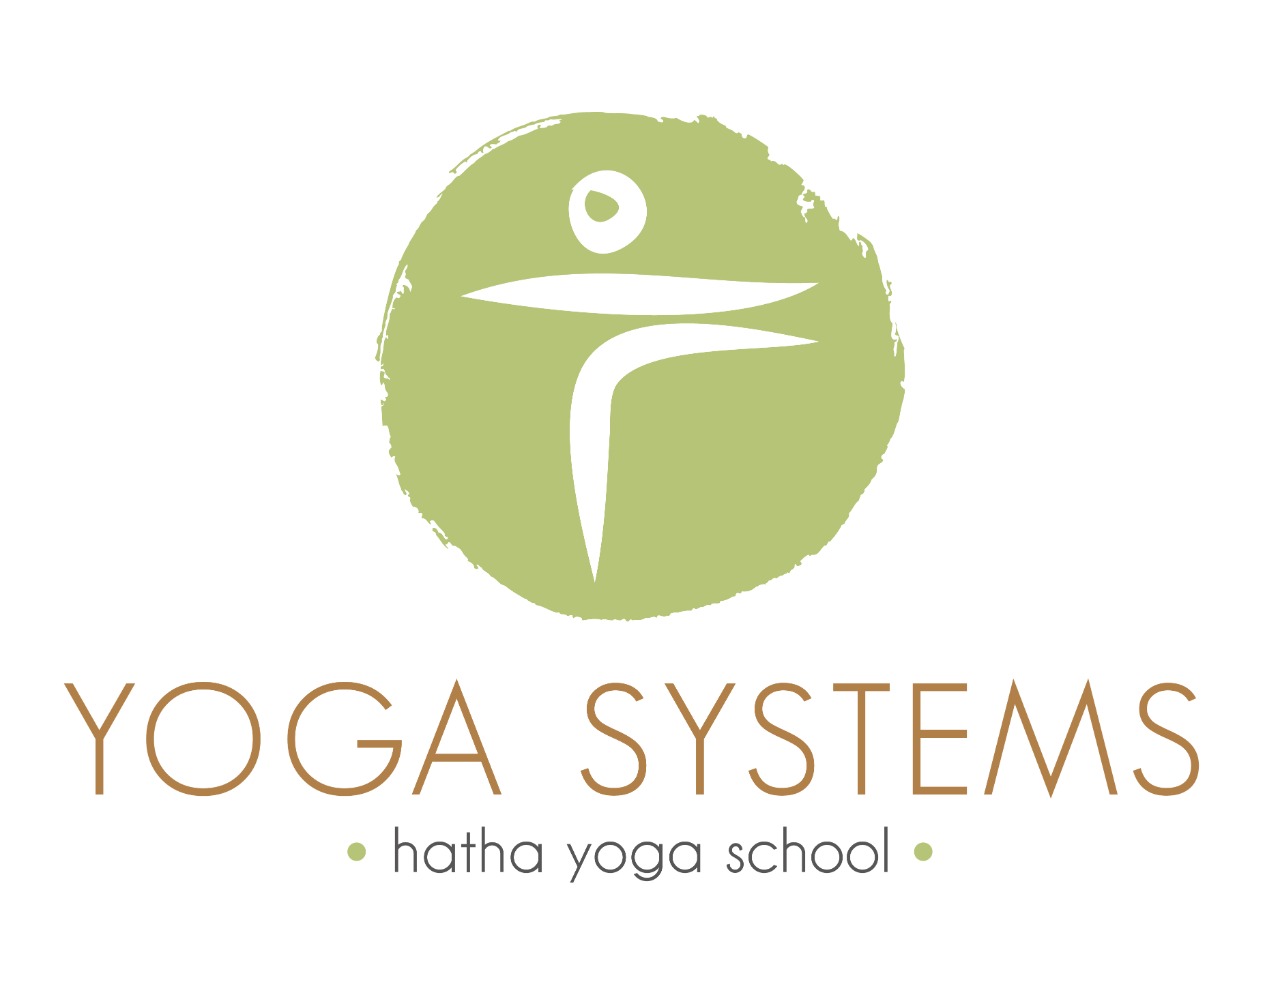 Yoga Systems Hatha Yoga School 